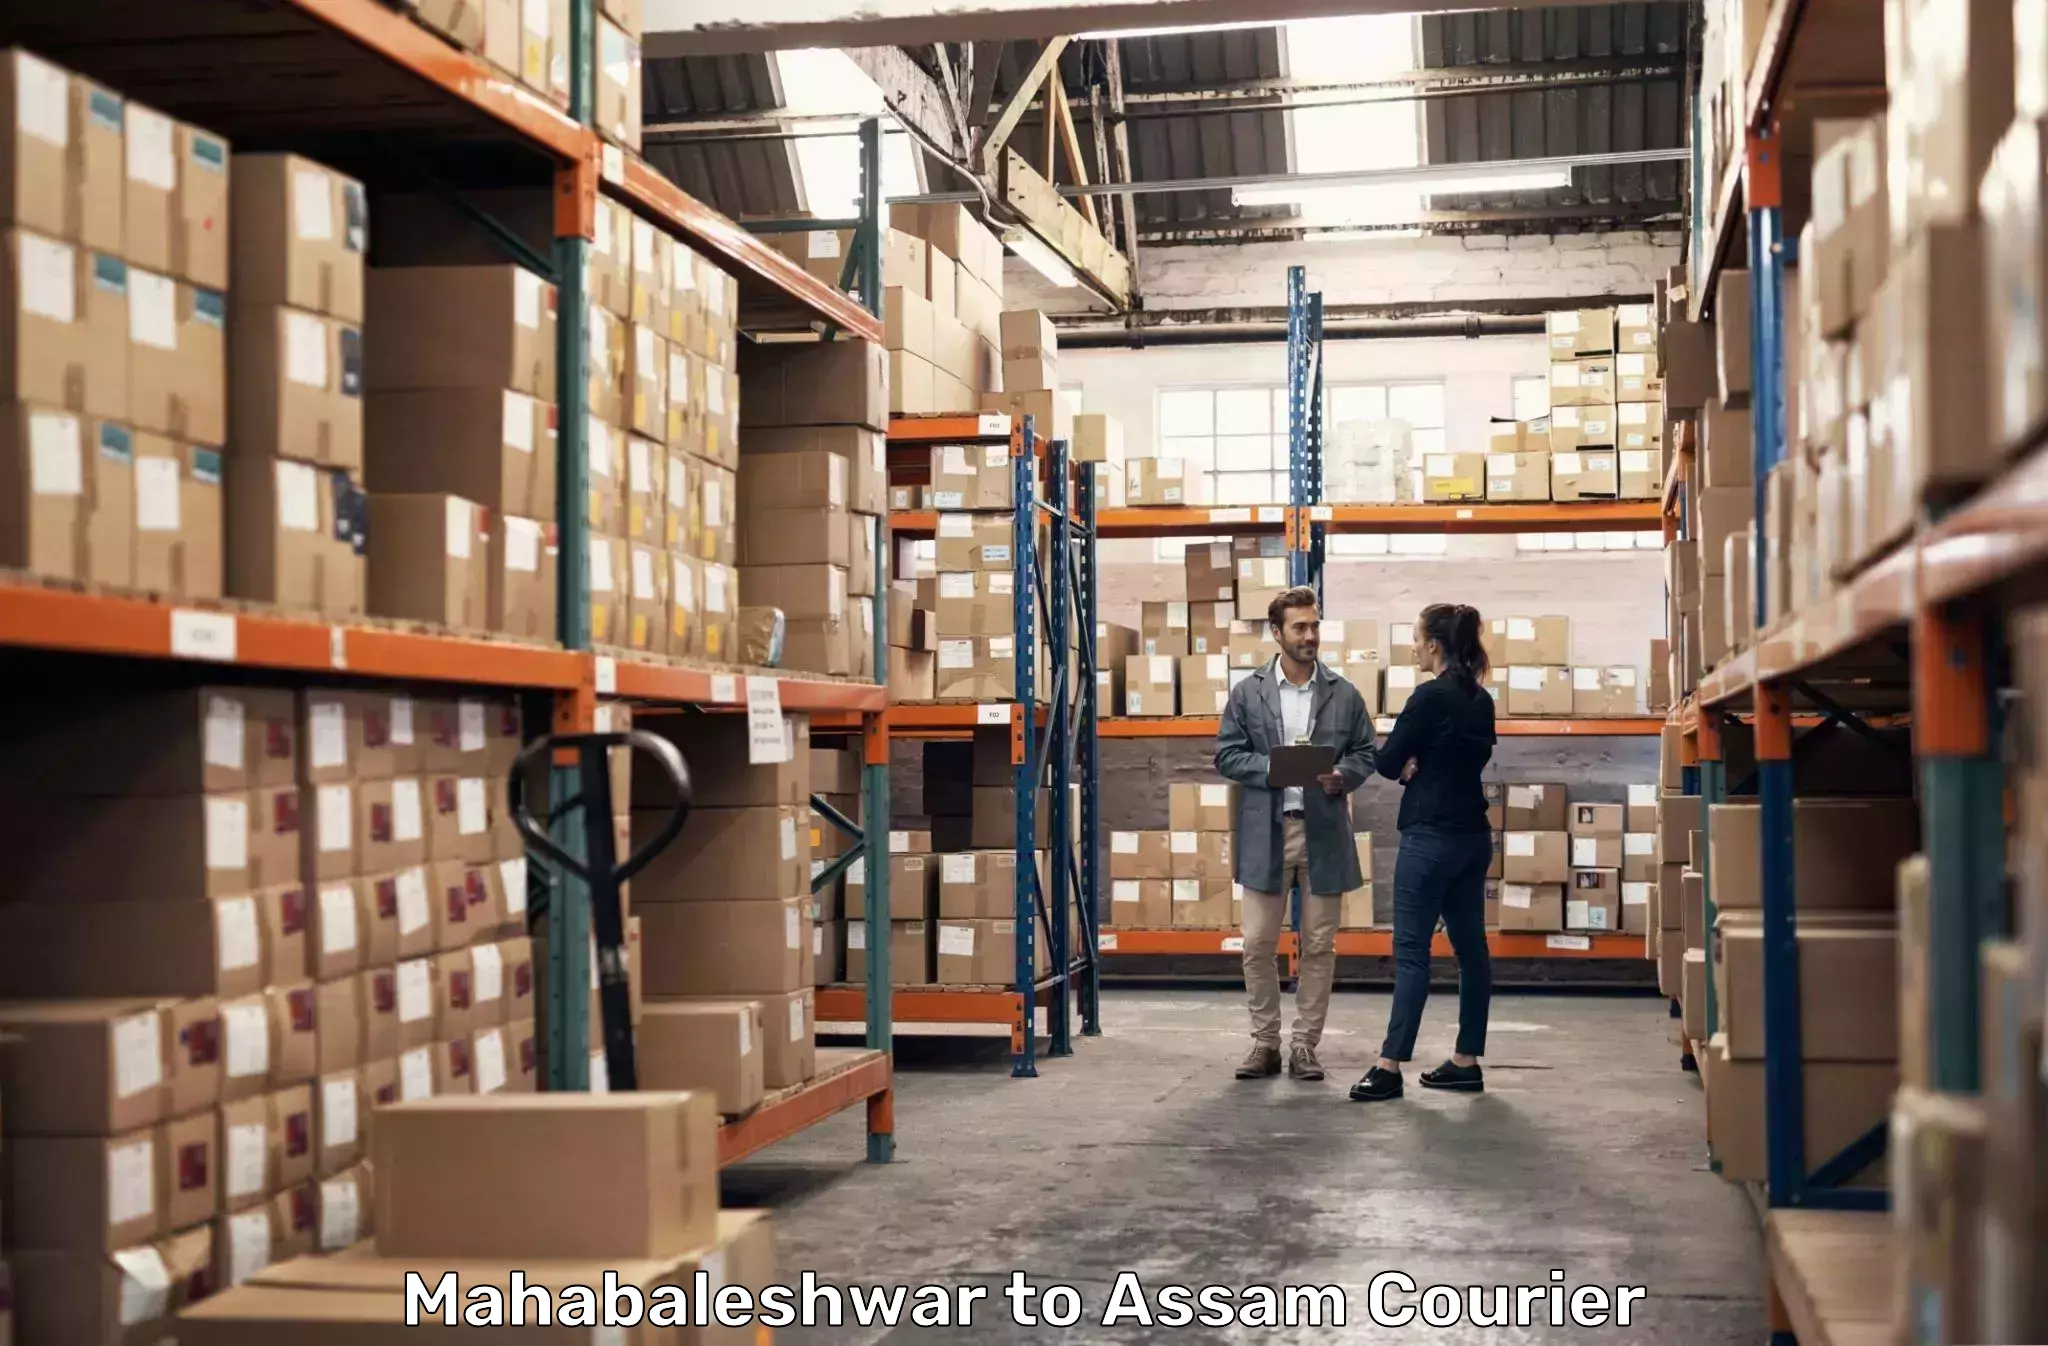 Global parcel delivery Mahabaleshwar to Dotma